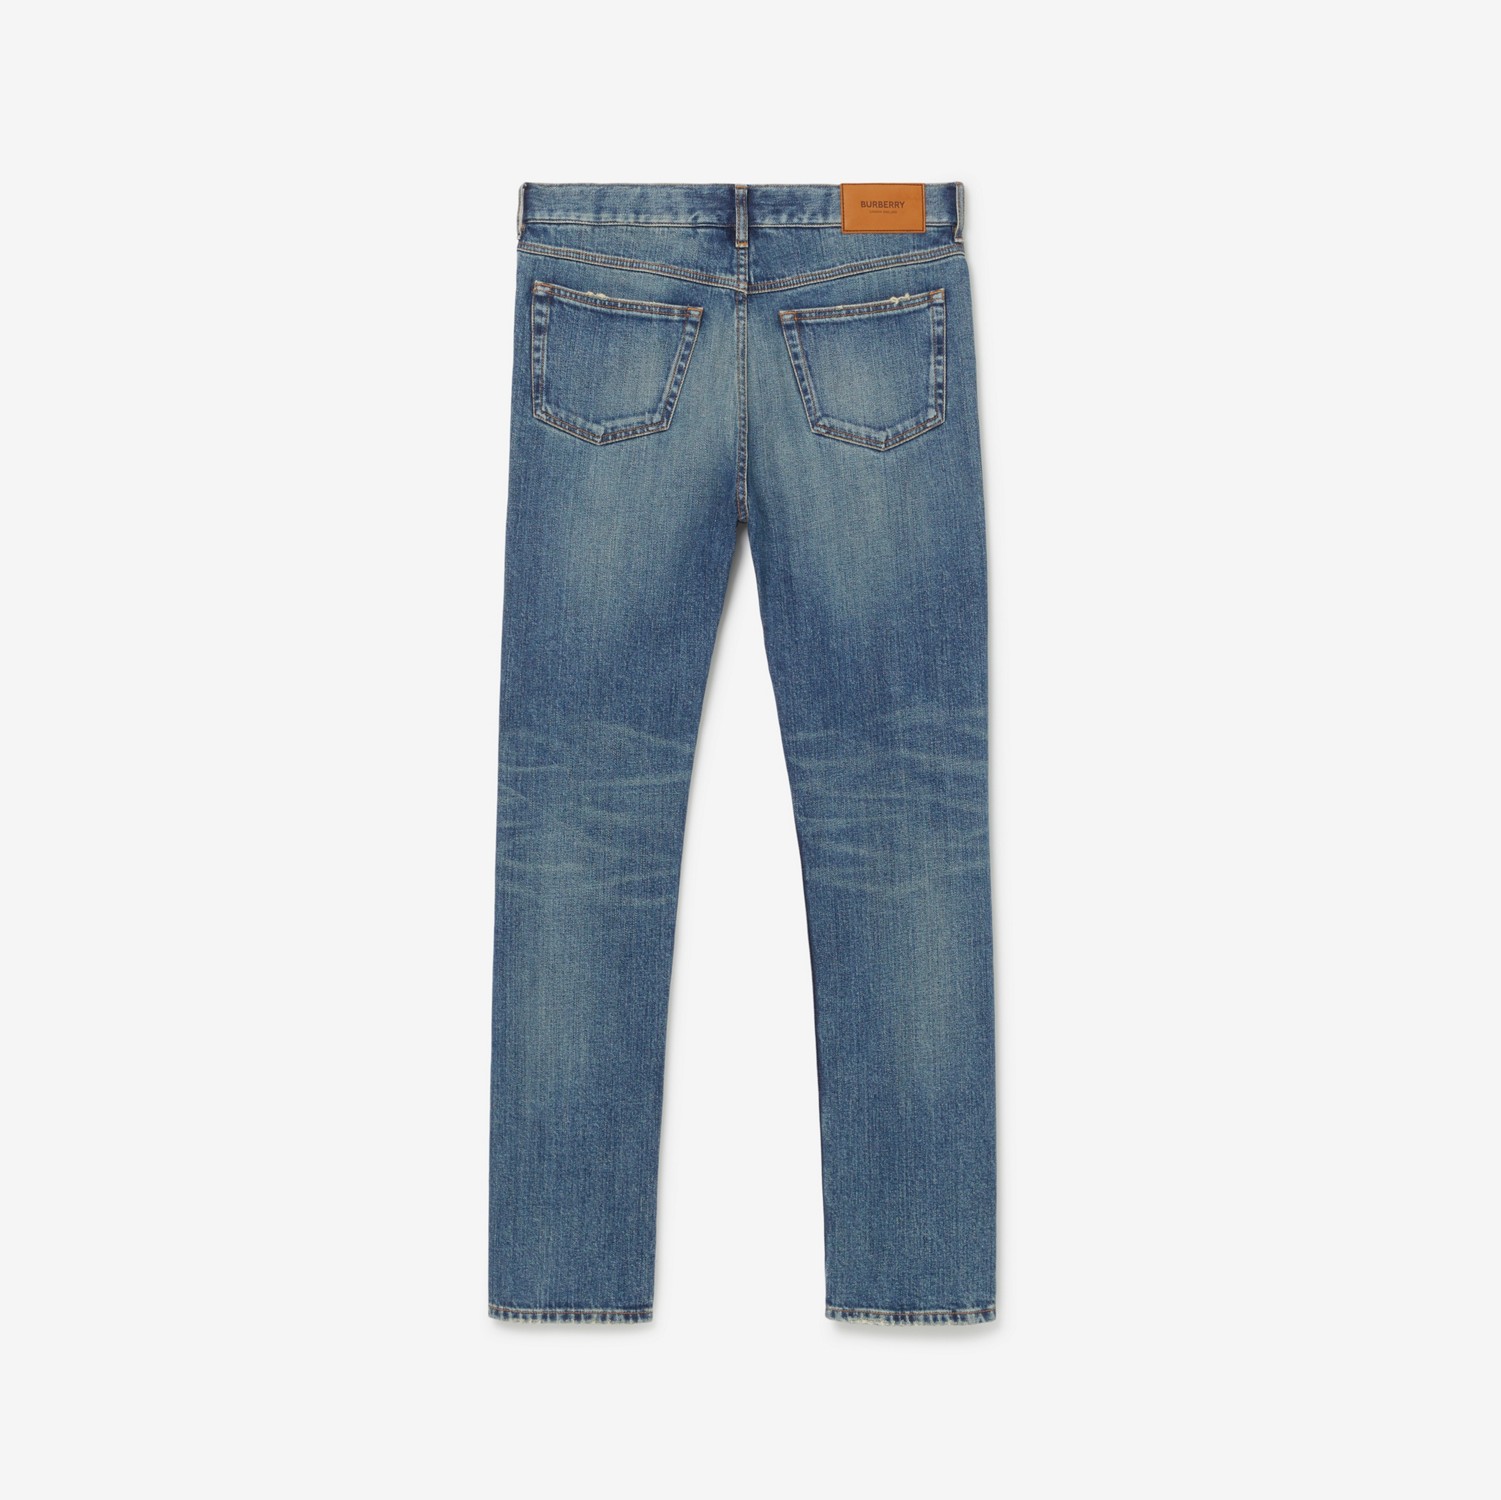 Jeans aus japanischem Stretchdenim in schmaler Passform (Vintage Denim) - Herren | Burberry®